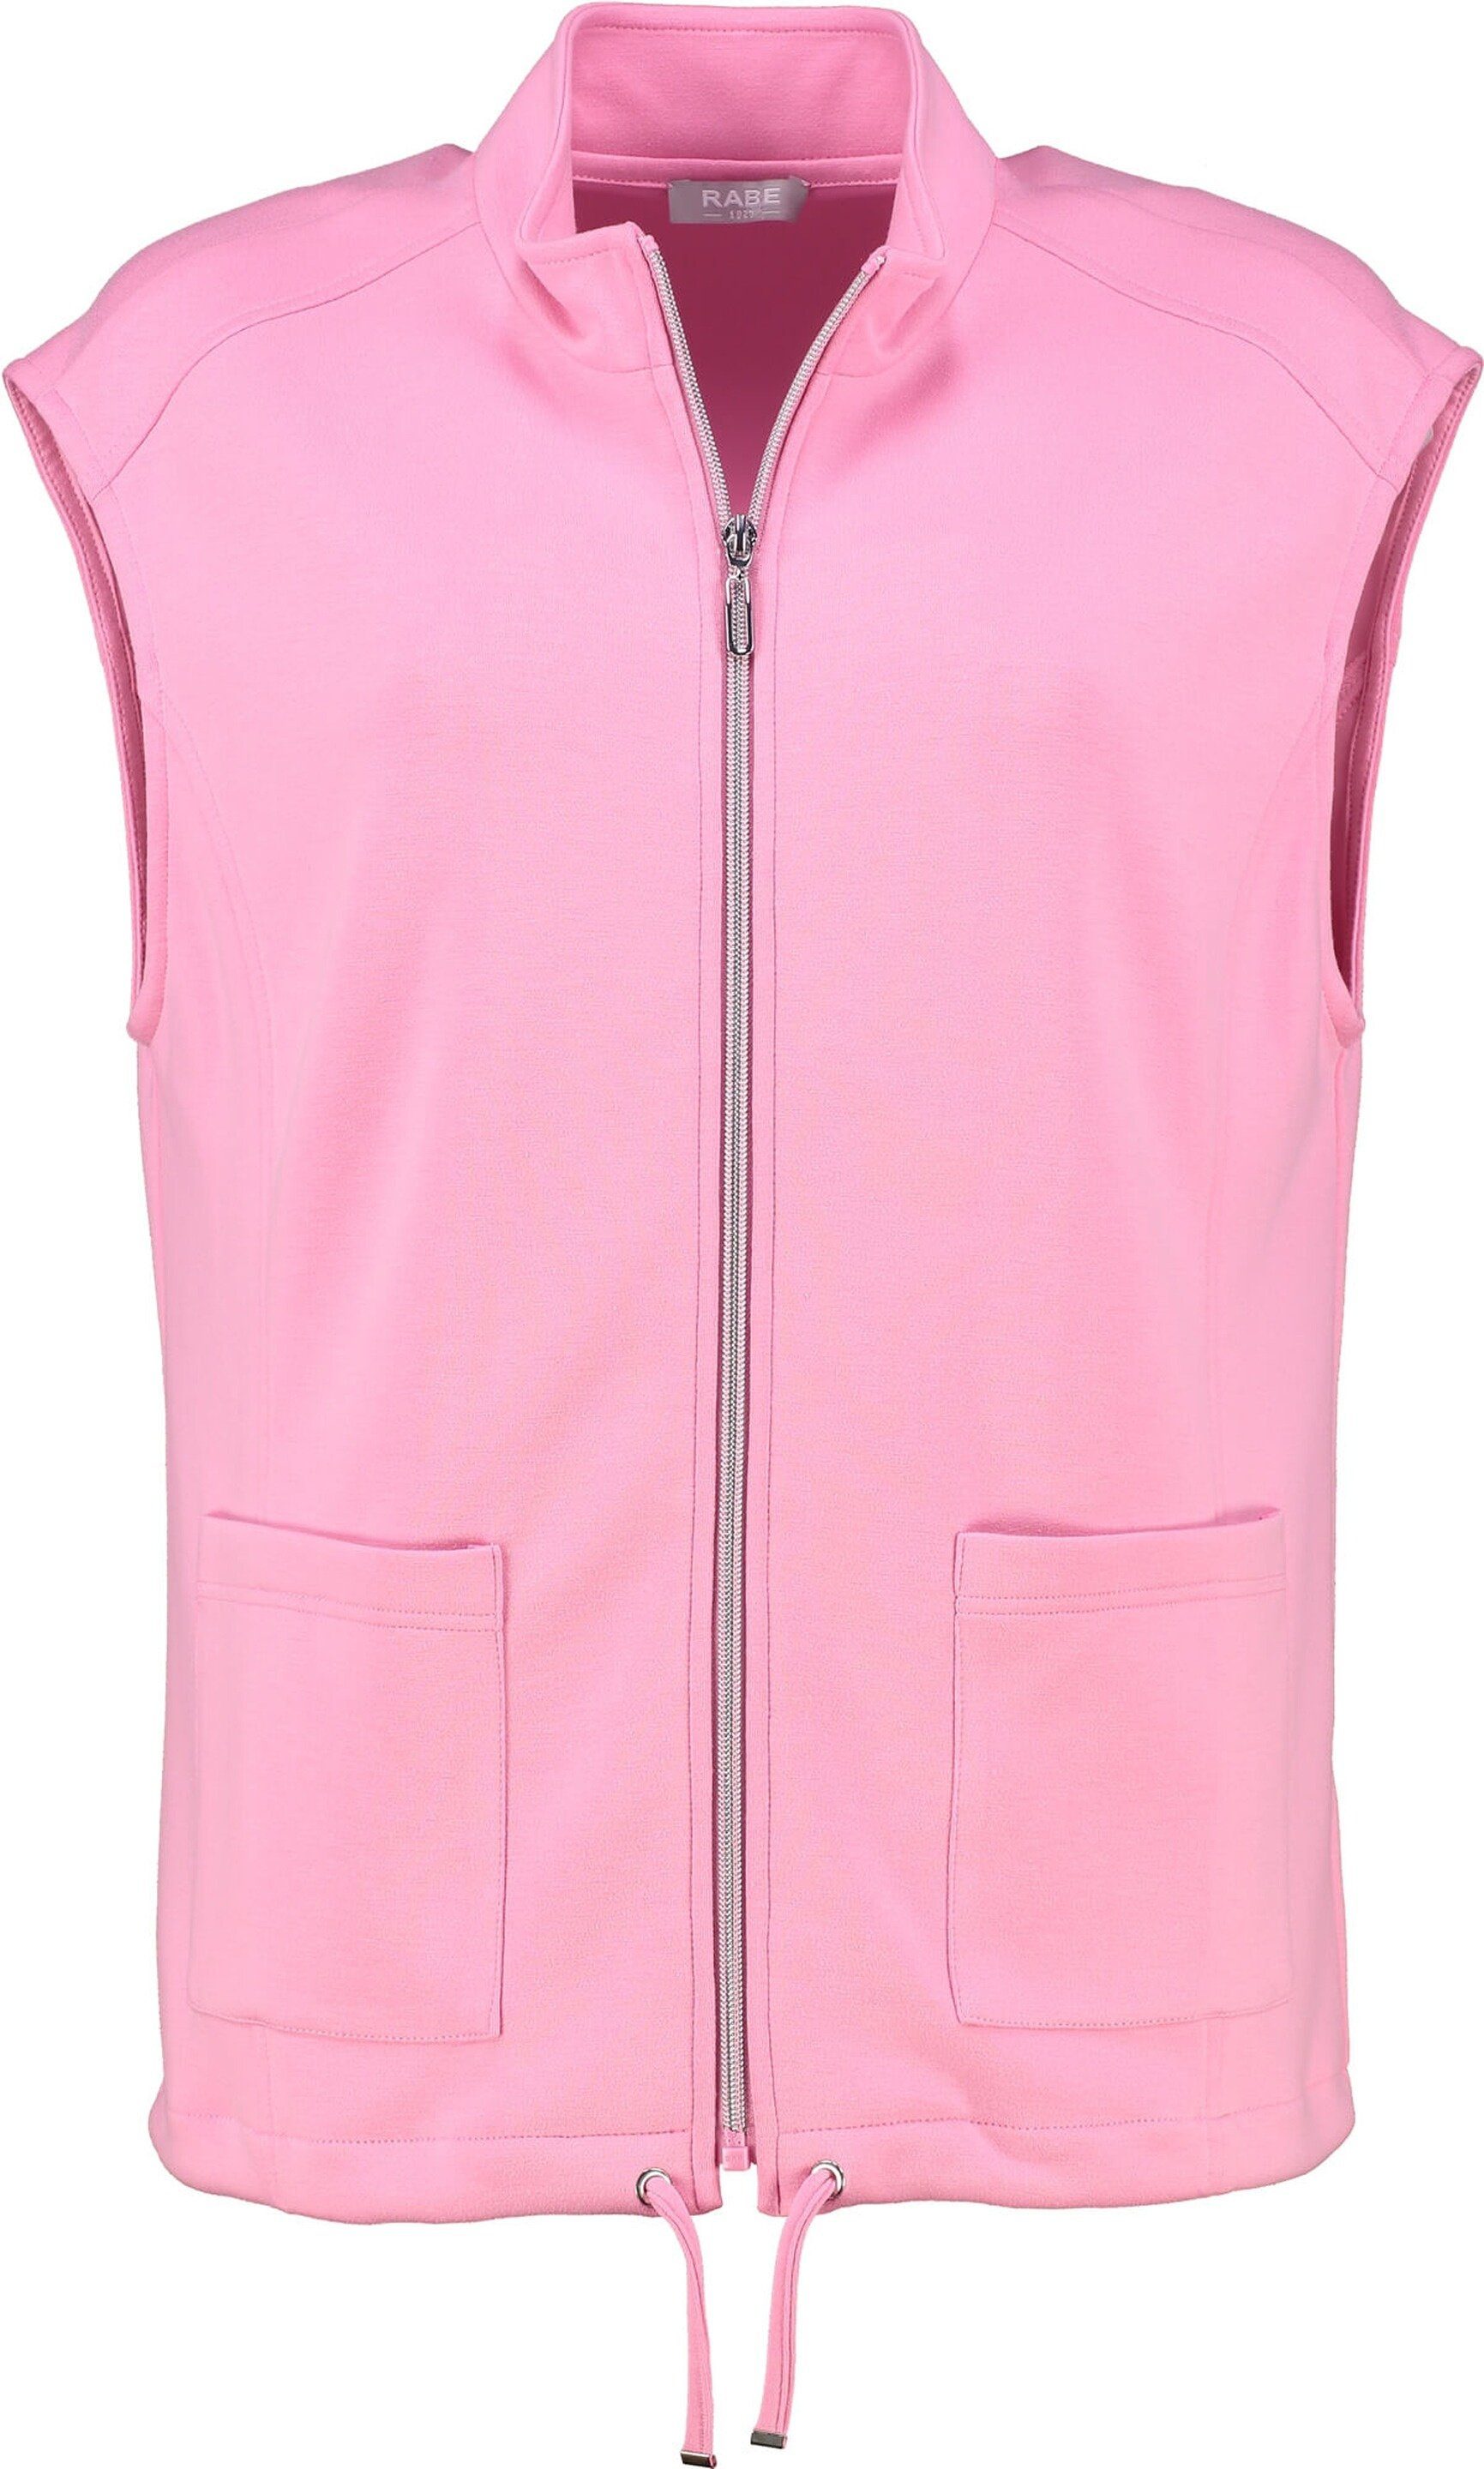 Rabe Shirtweste RABE Weste rosa in weicher Stretch-Qualität 233 Himbeere